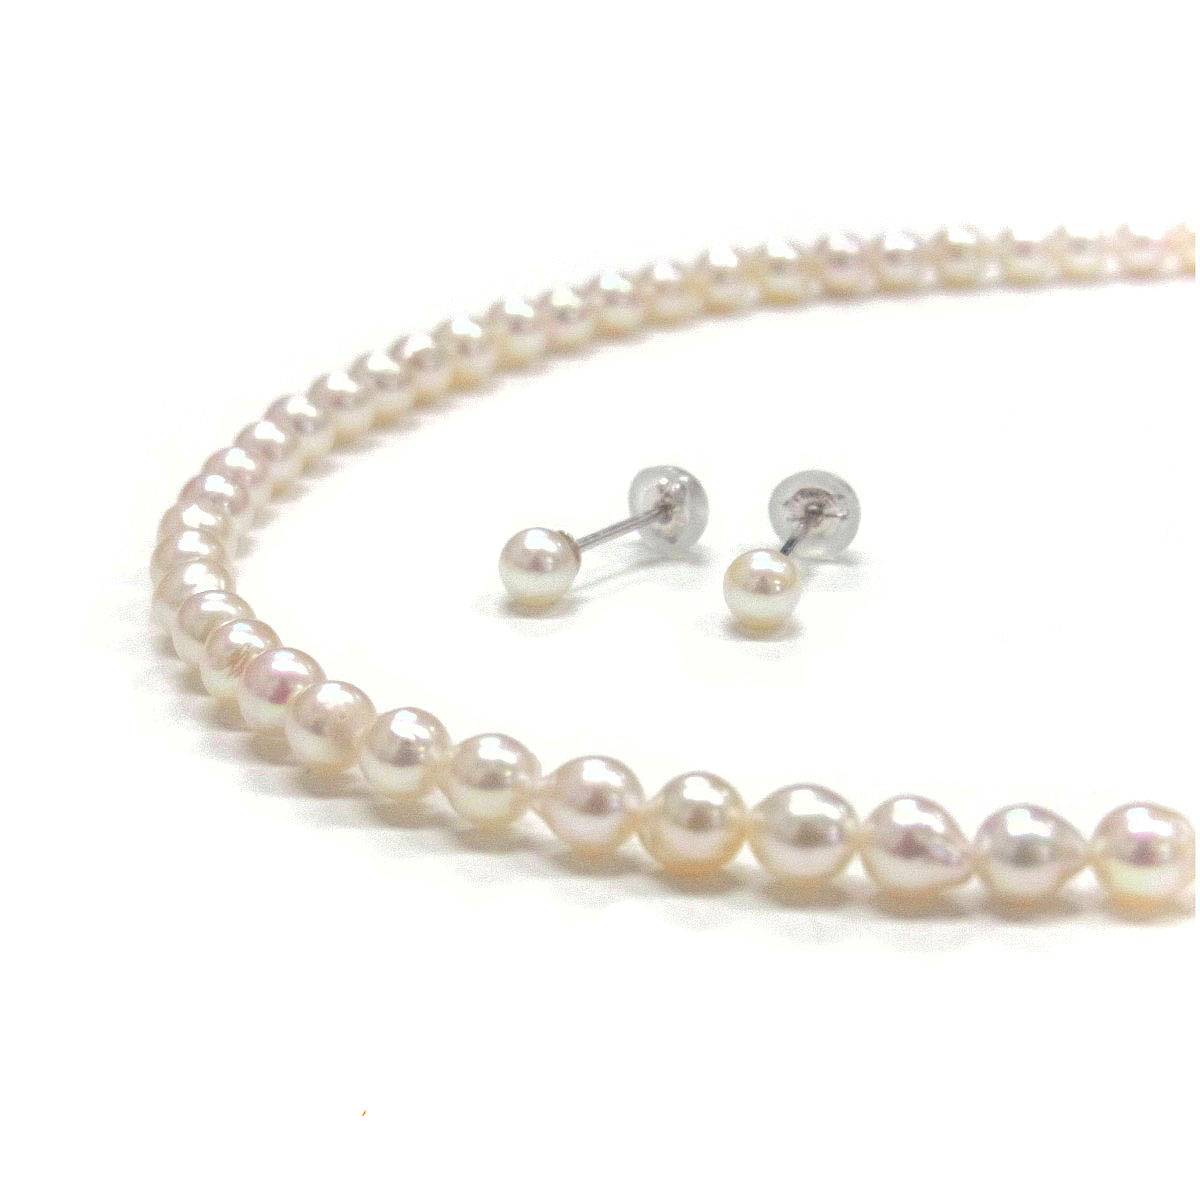 あこや本真珠のネックレスとピアスセット - www.sorbillomenu.com